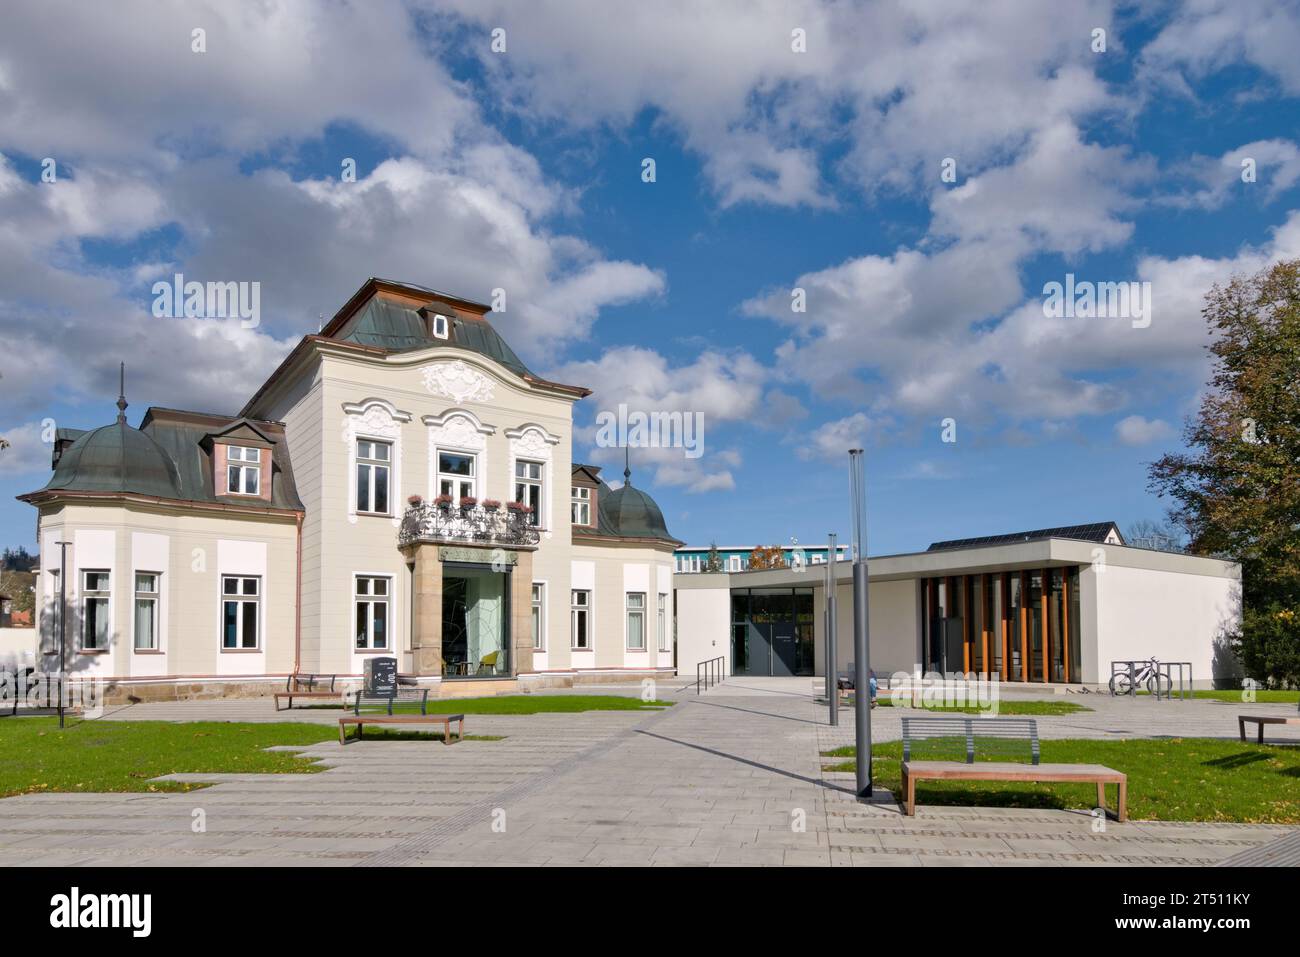 Rekonstruktionen der öffentlichen Bibliothek in Roznov Pod Radhostem in Tschechien. Kombination aus moderner und klassischer Architektur. Stockfoto